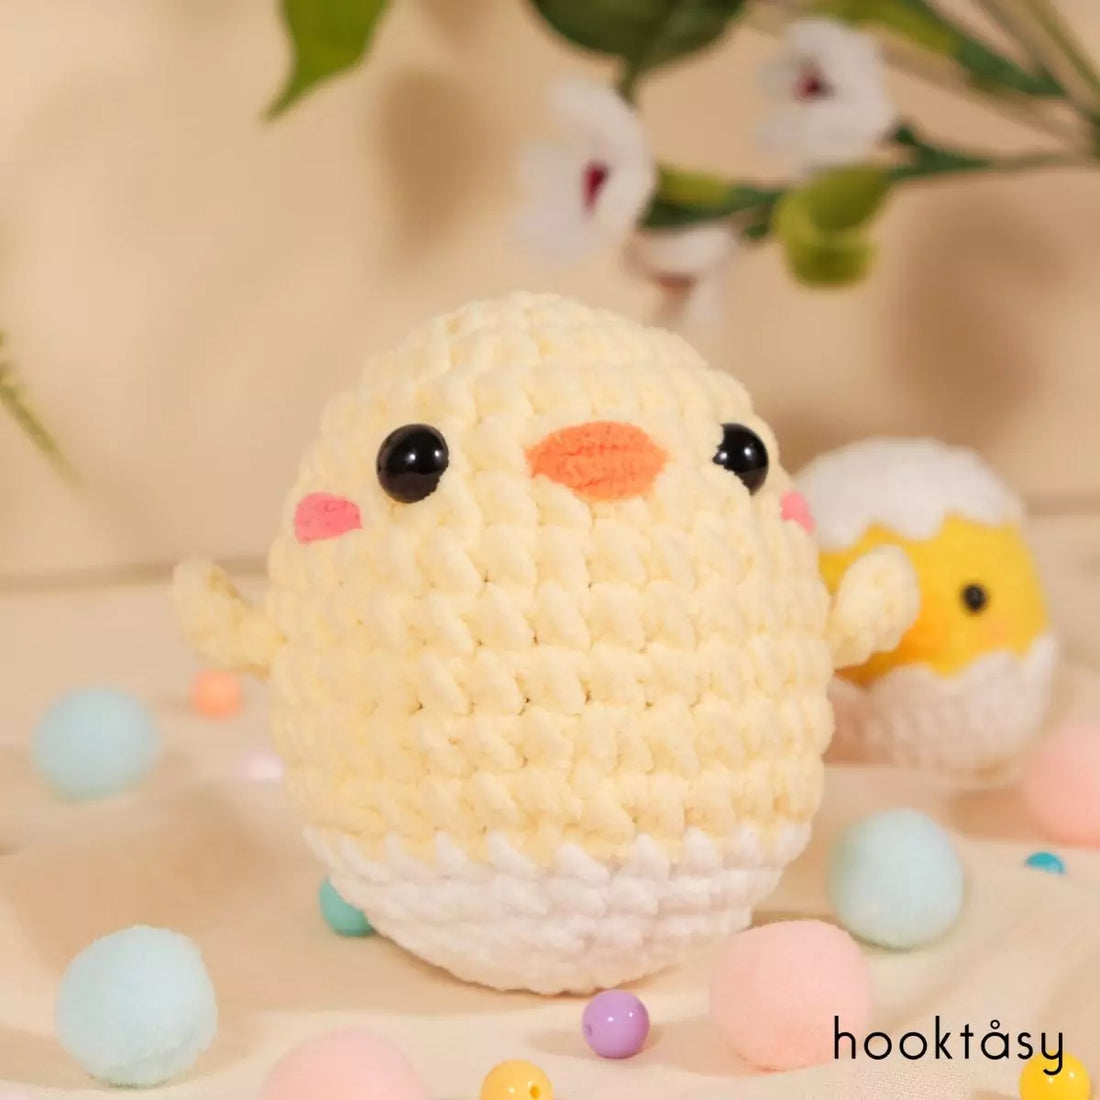 Flippy chick - Hooktasy